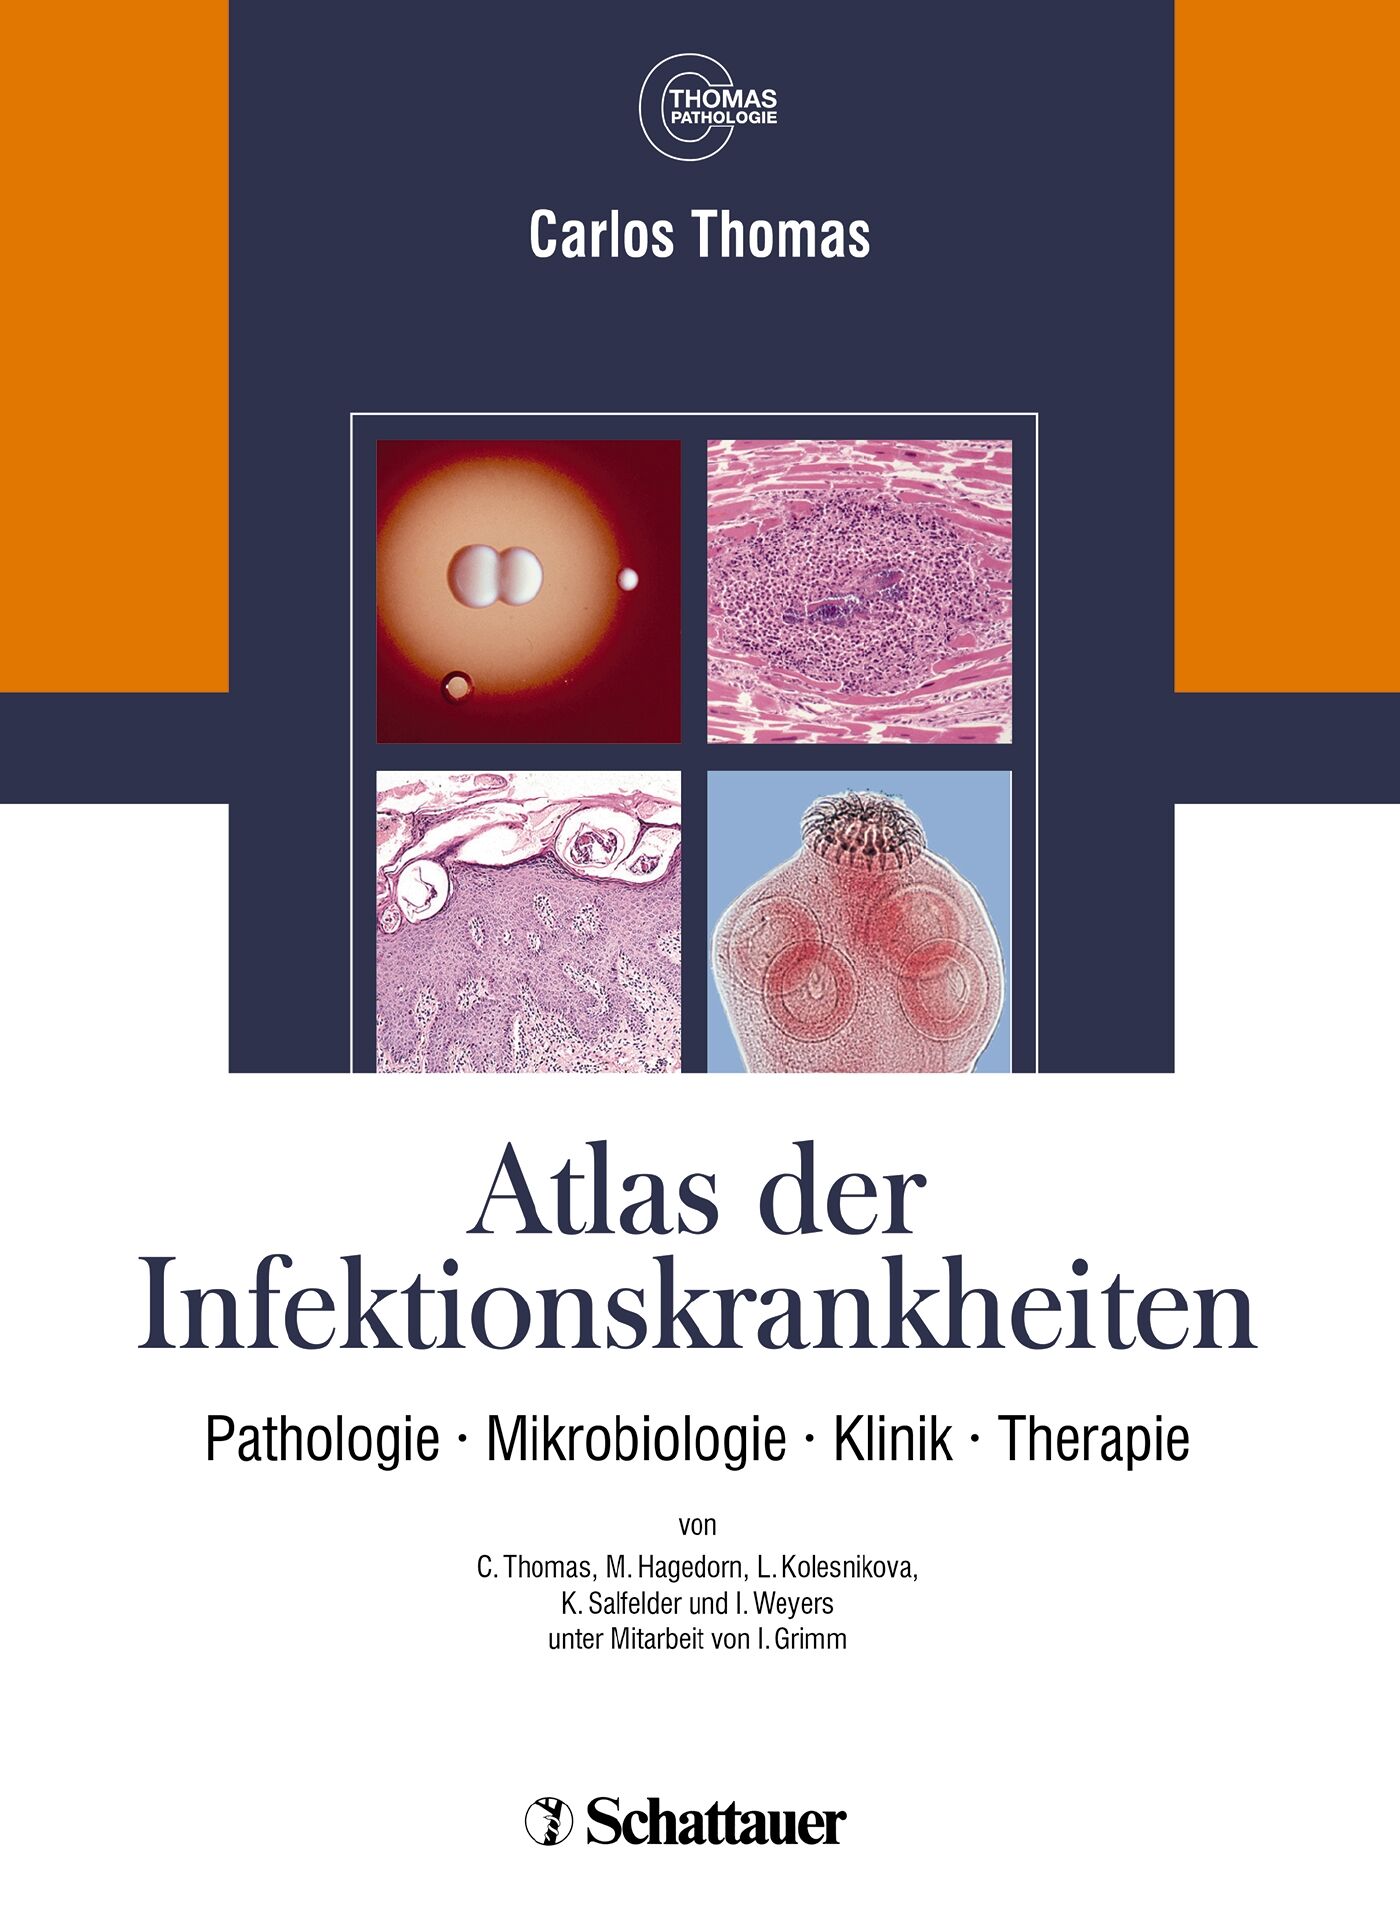 Atlas der Infektionskrankheiten, 9783794527625